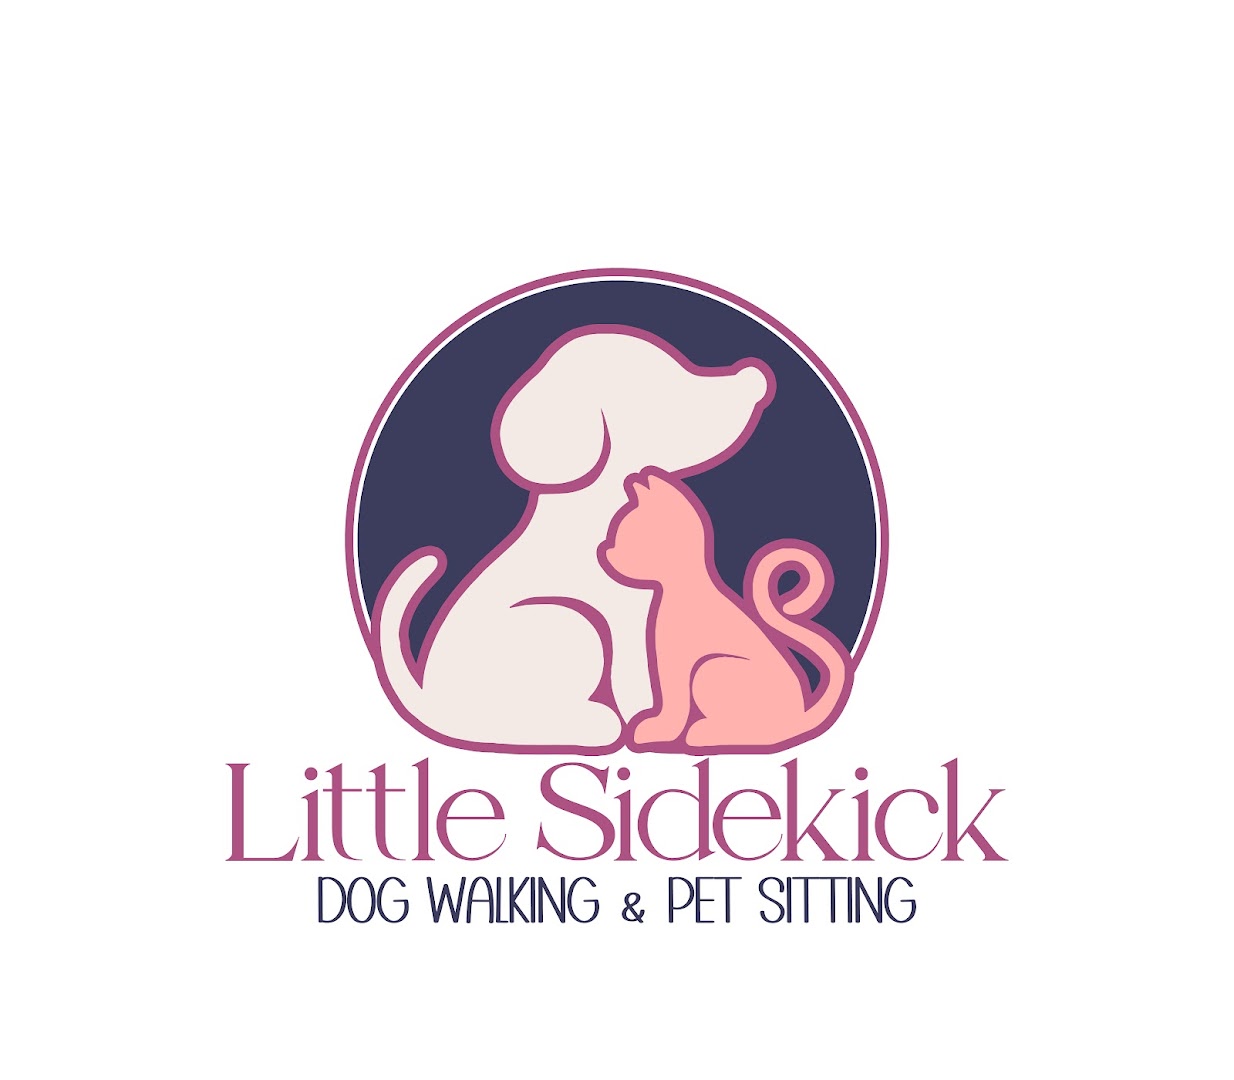 Little Sidekick Pet Care